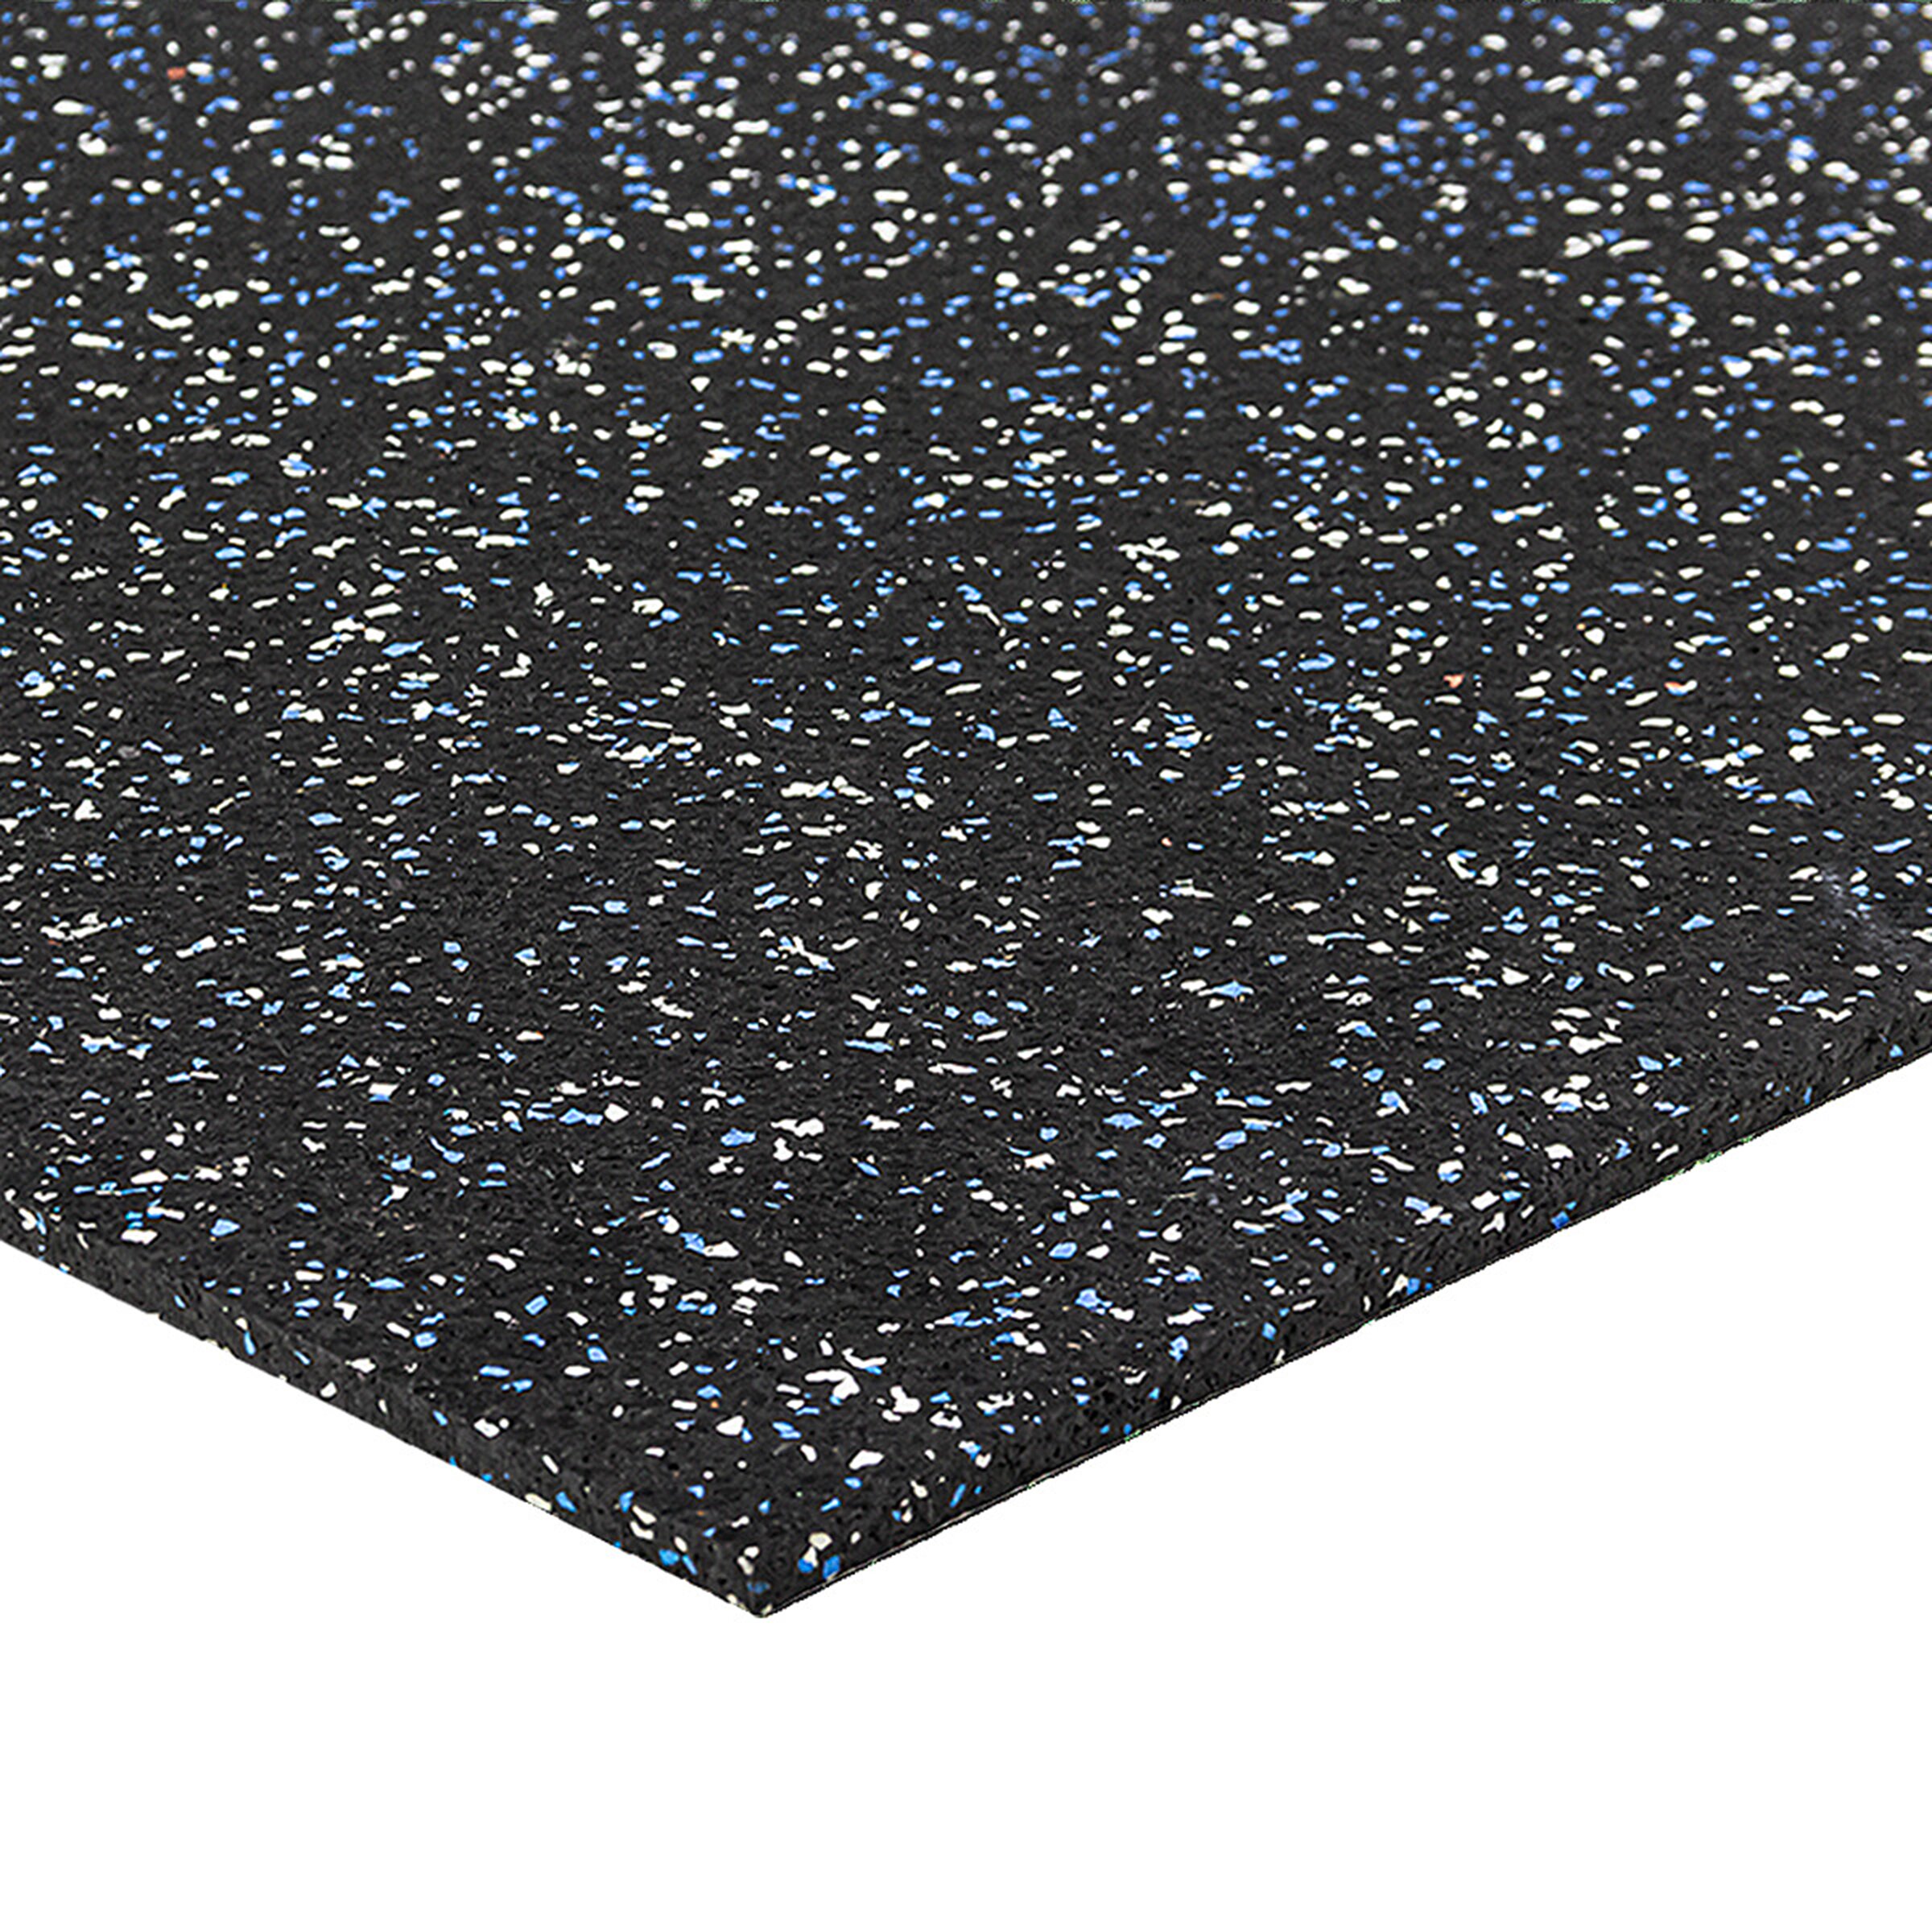 Černo-bílo-modrá gumová modulová puzzle dlažba FLOMA FitFlo SF1050 - délka 50 cm, šířka 50 cm, výška 0,8 cm